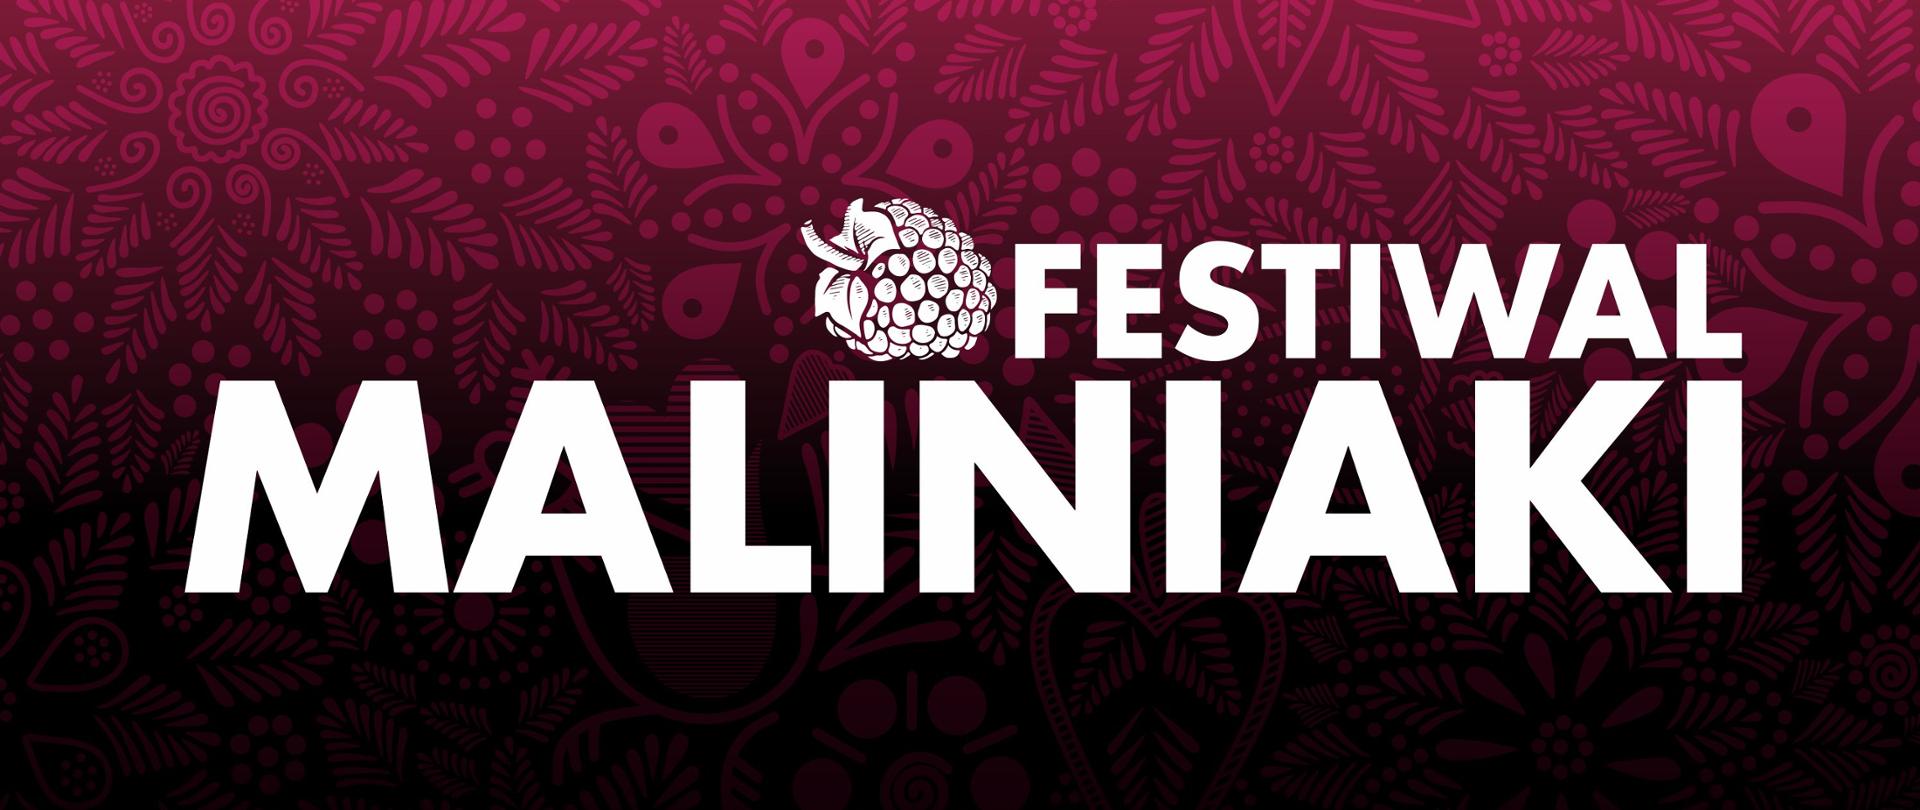 Grafika przedstawia biały napis "Festiwal Maliniaki", obok którego znajduje się biała ilustracja owocu maliny, na różowo-czarnym tle.